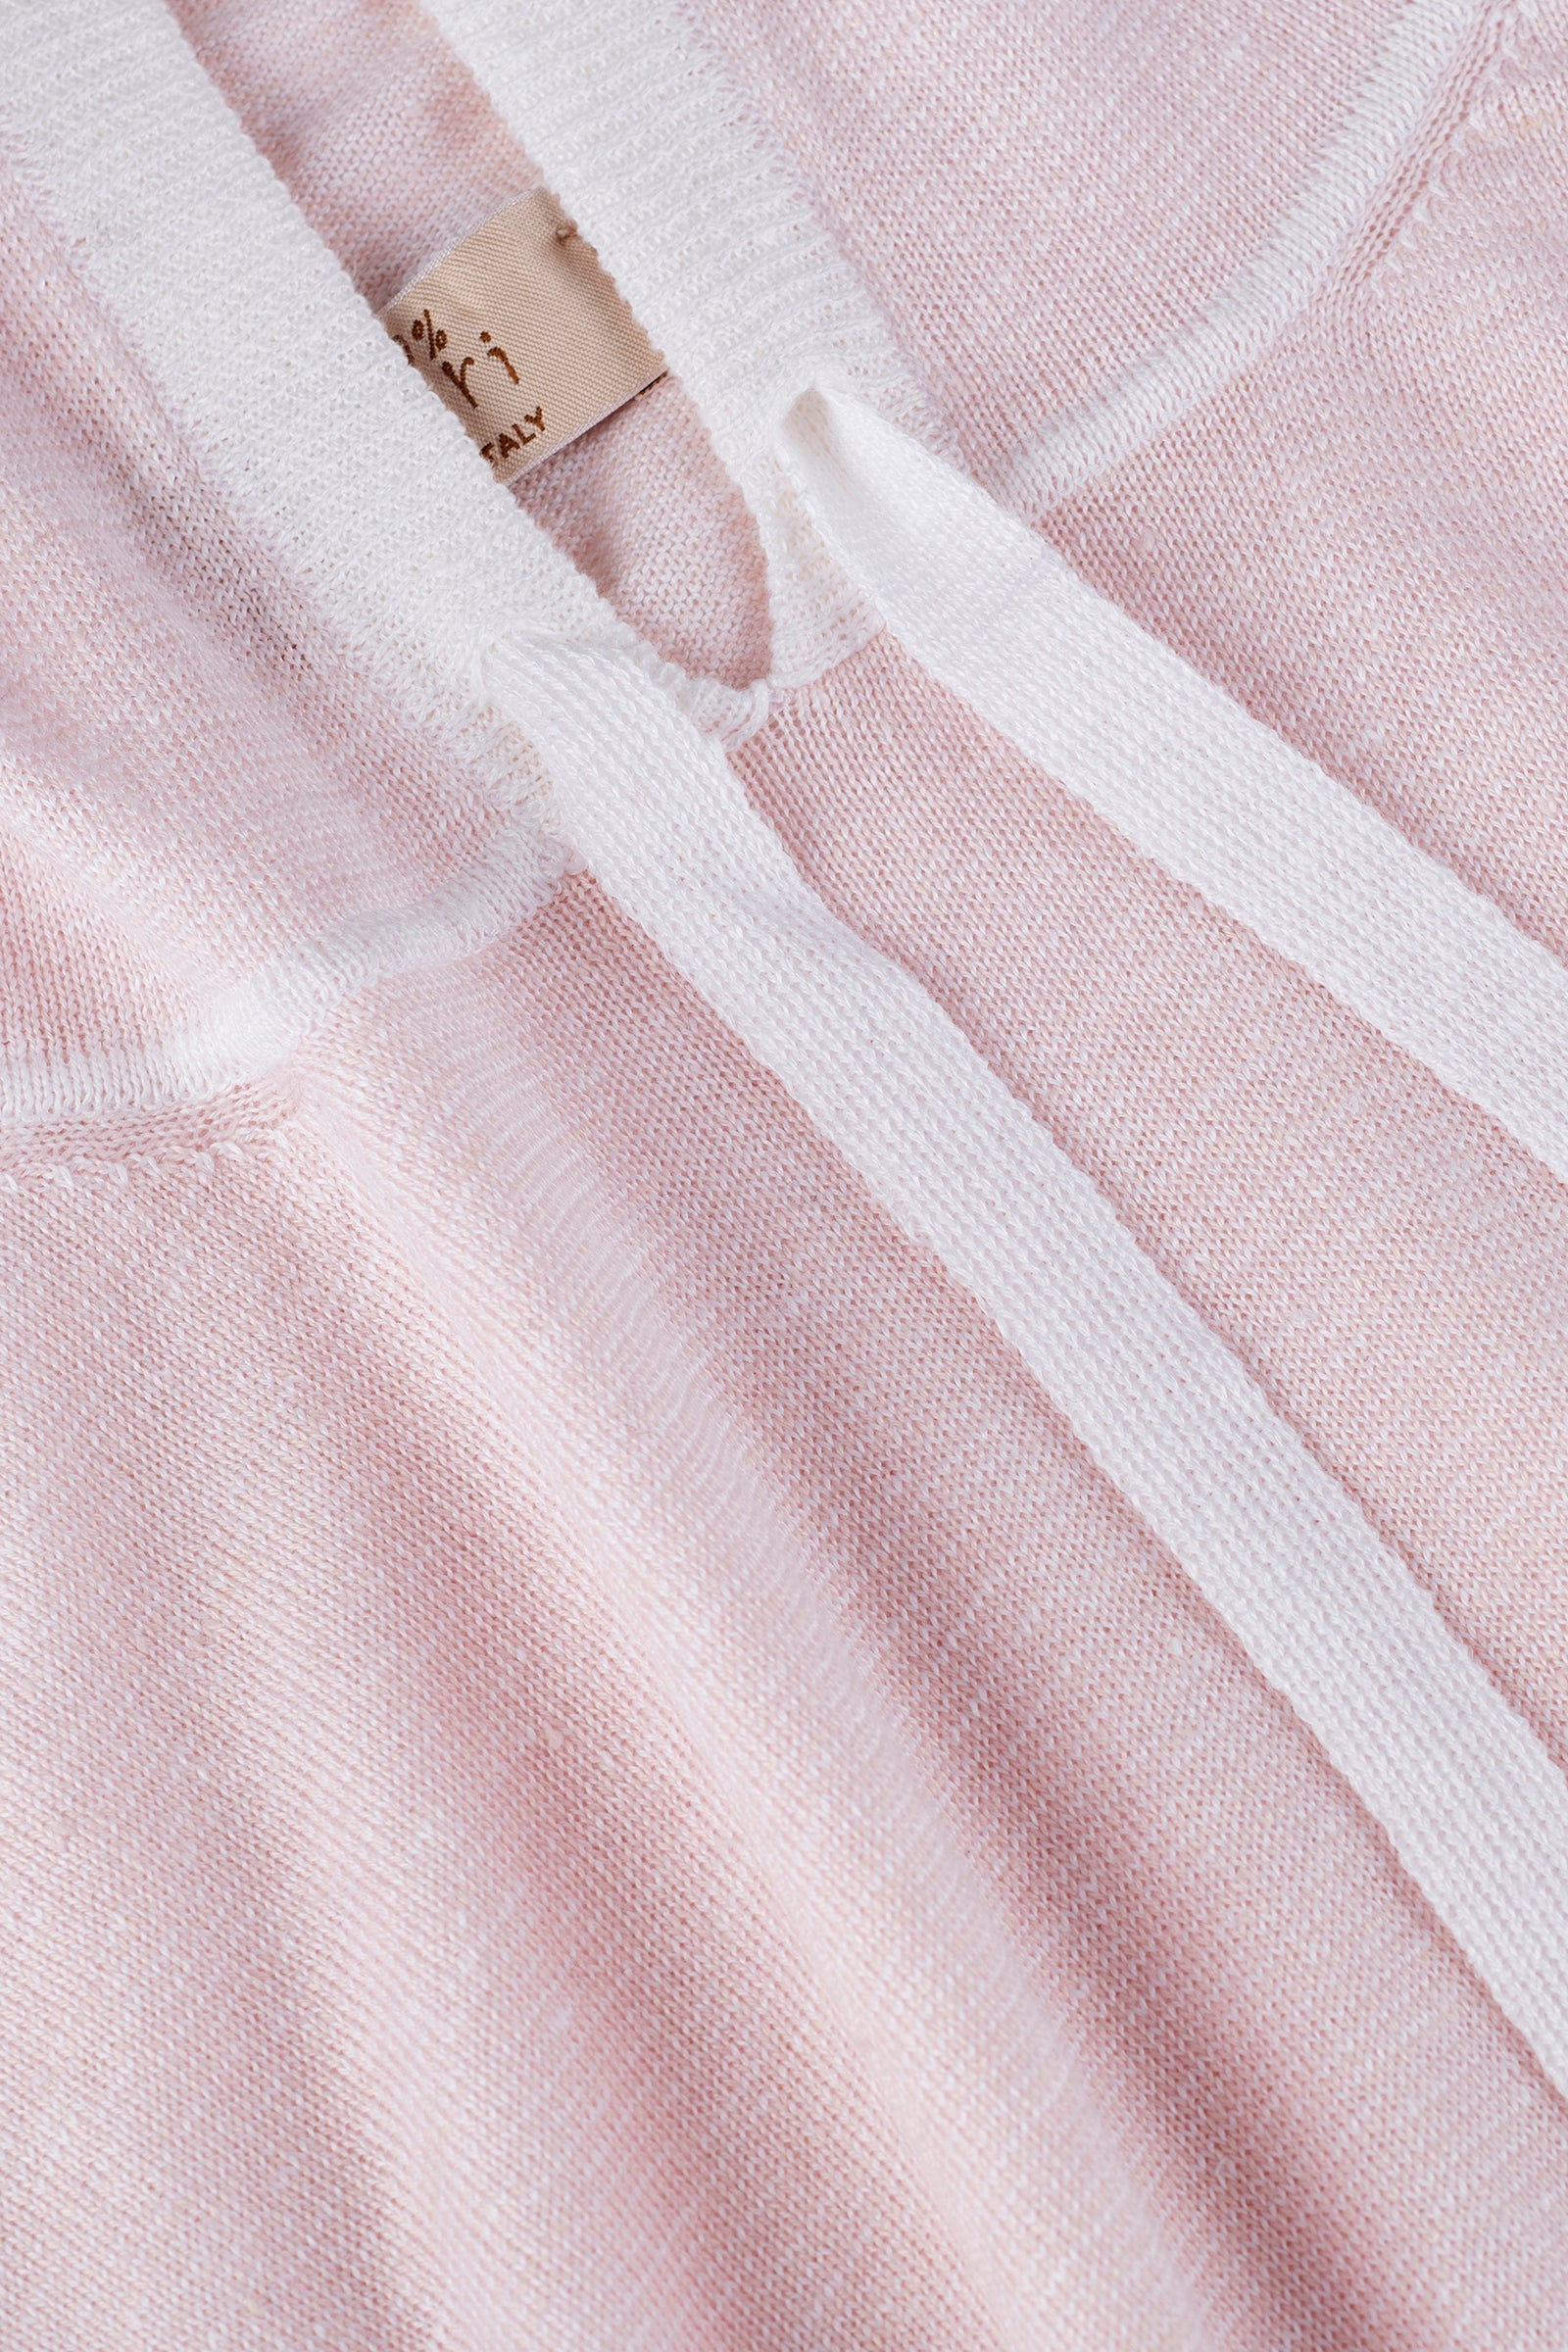 Polo Dubai 100% Capri pink and white linen polo detail